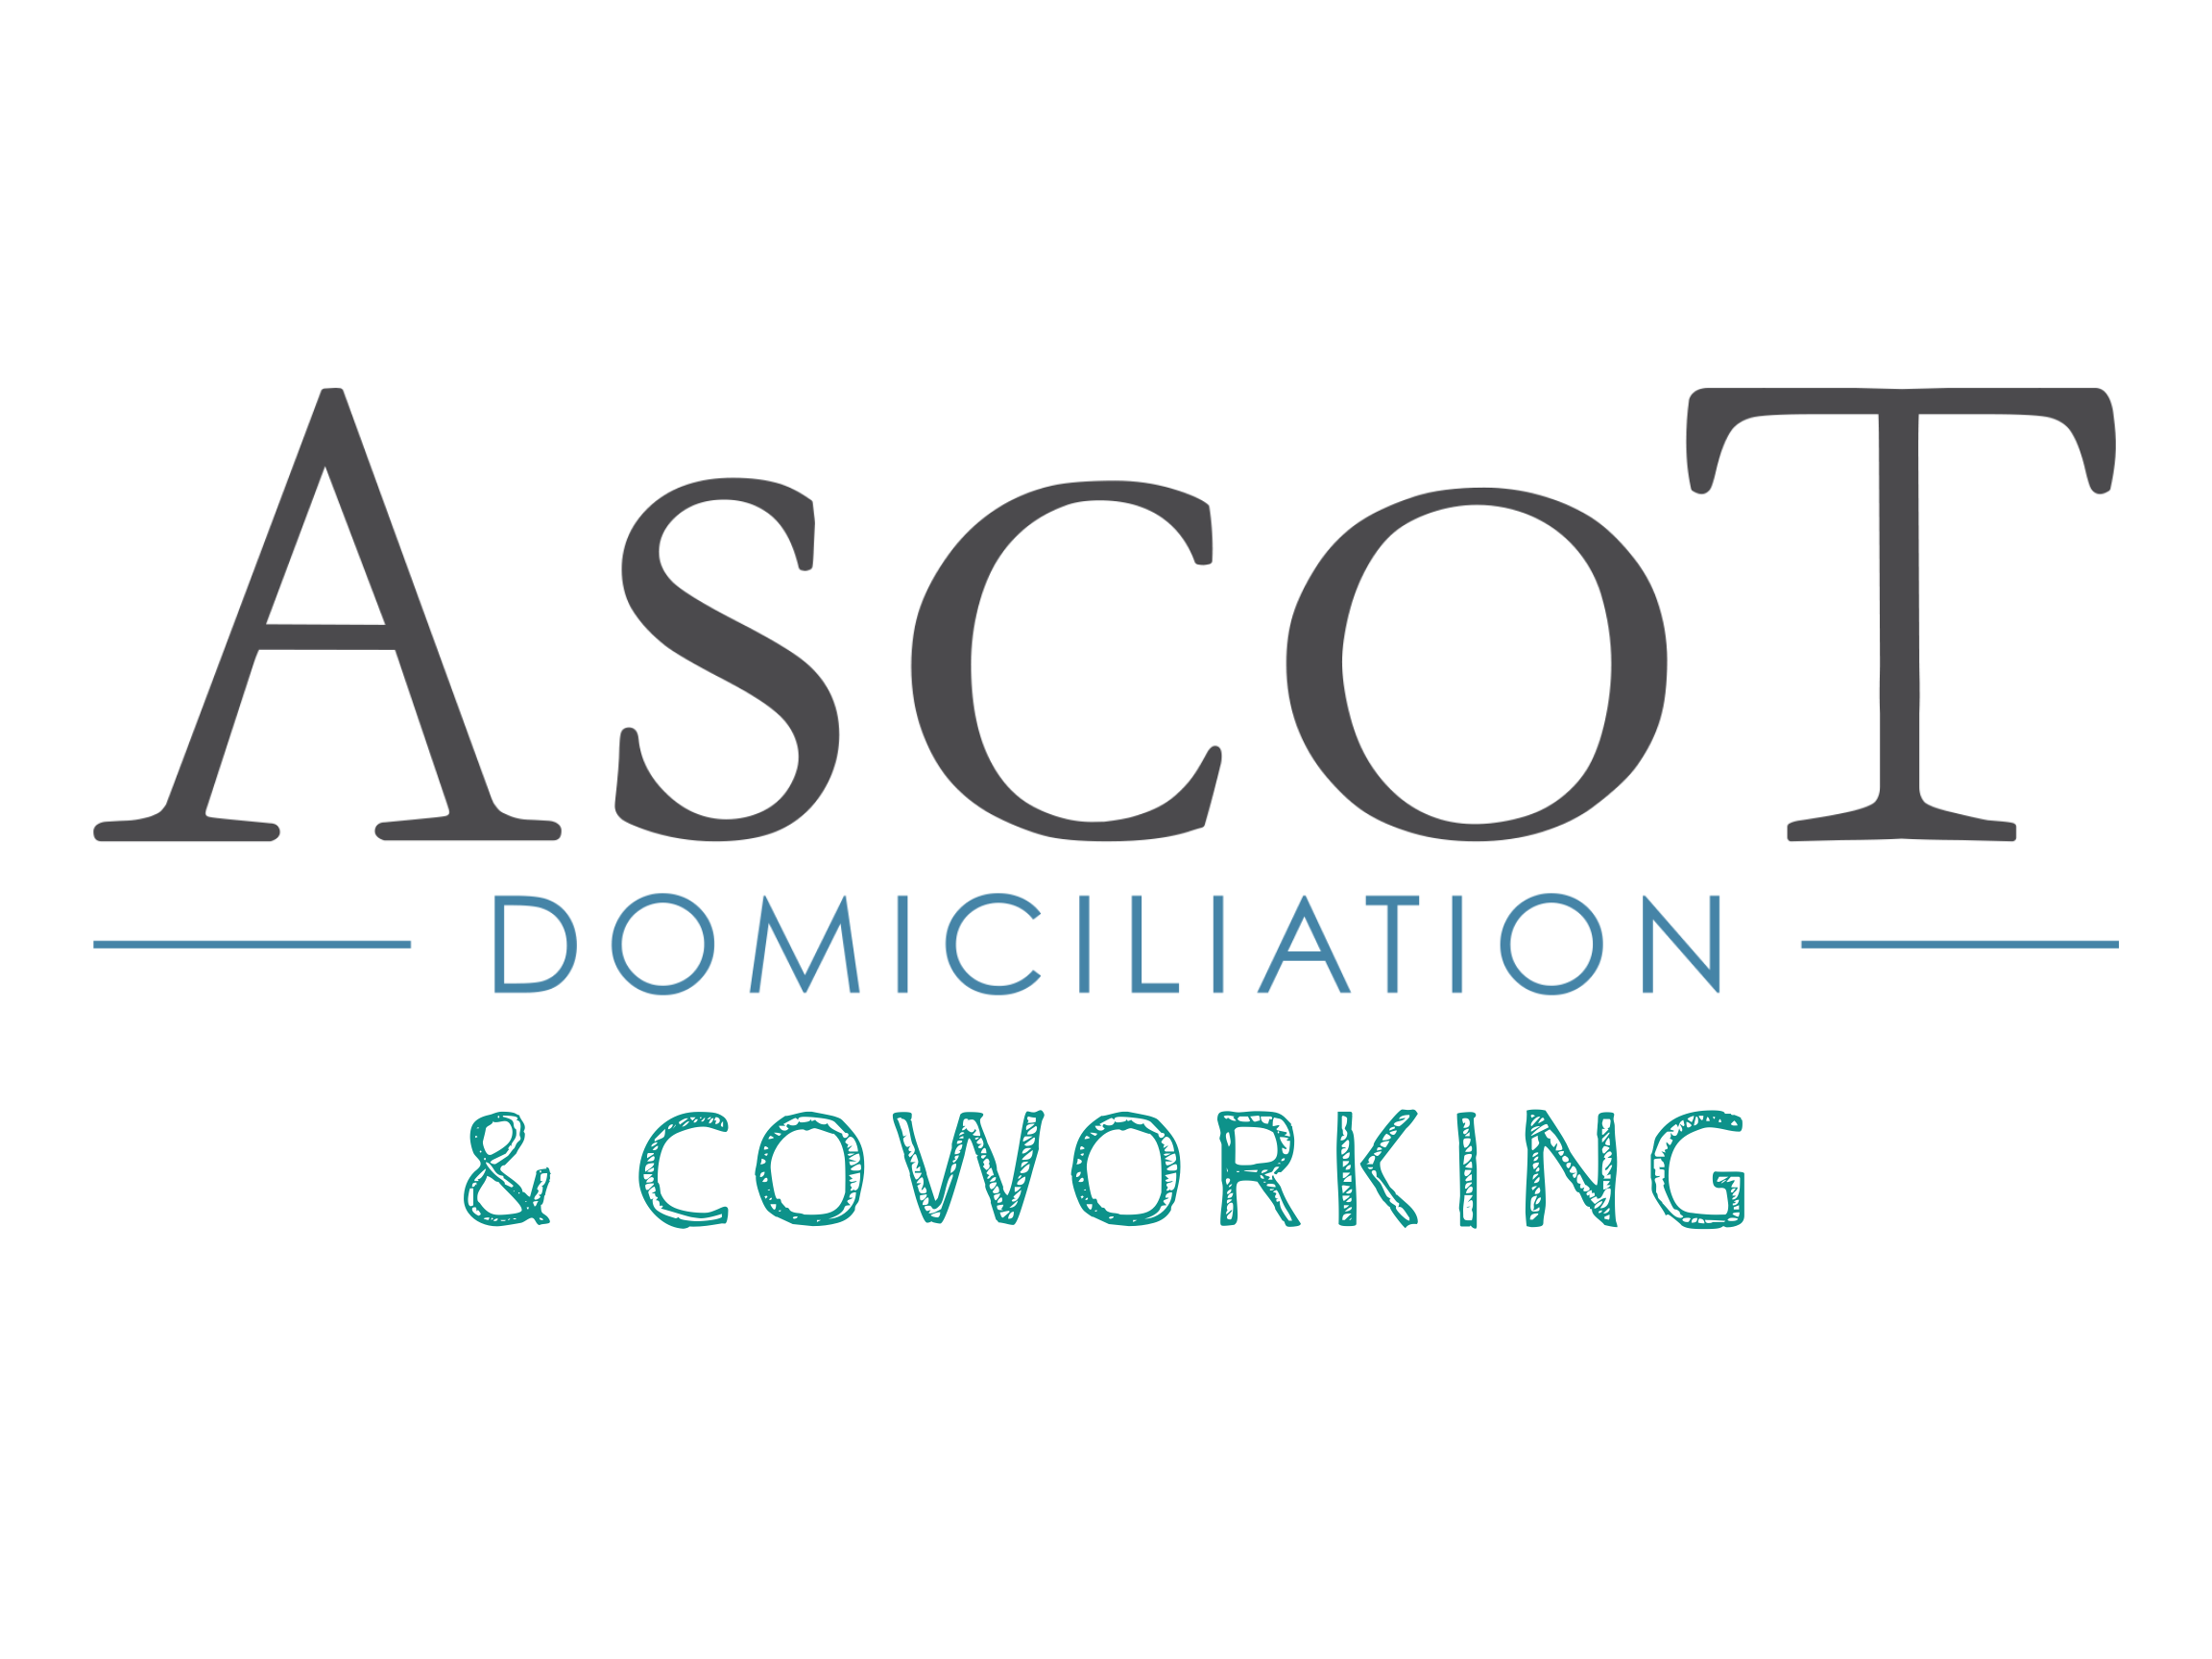 Ascot Domiciliation & Coworking